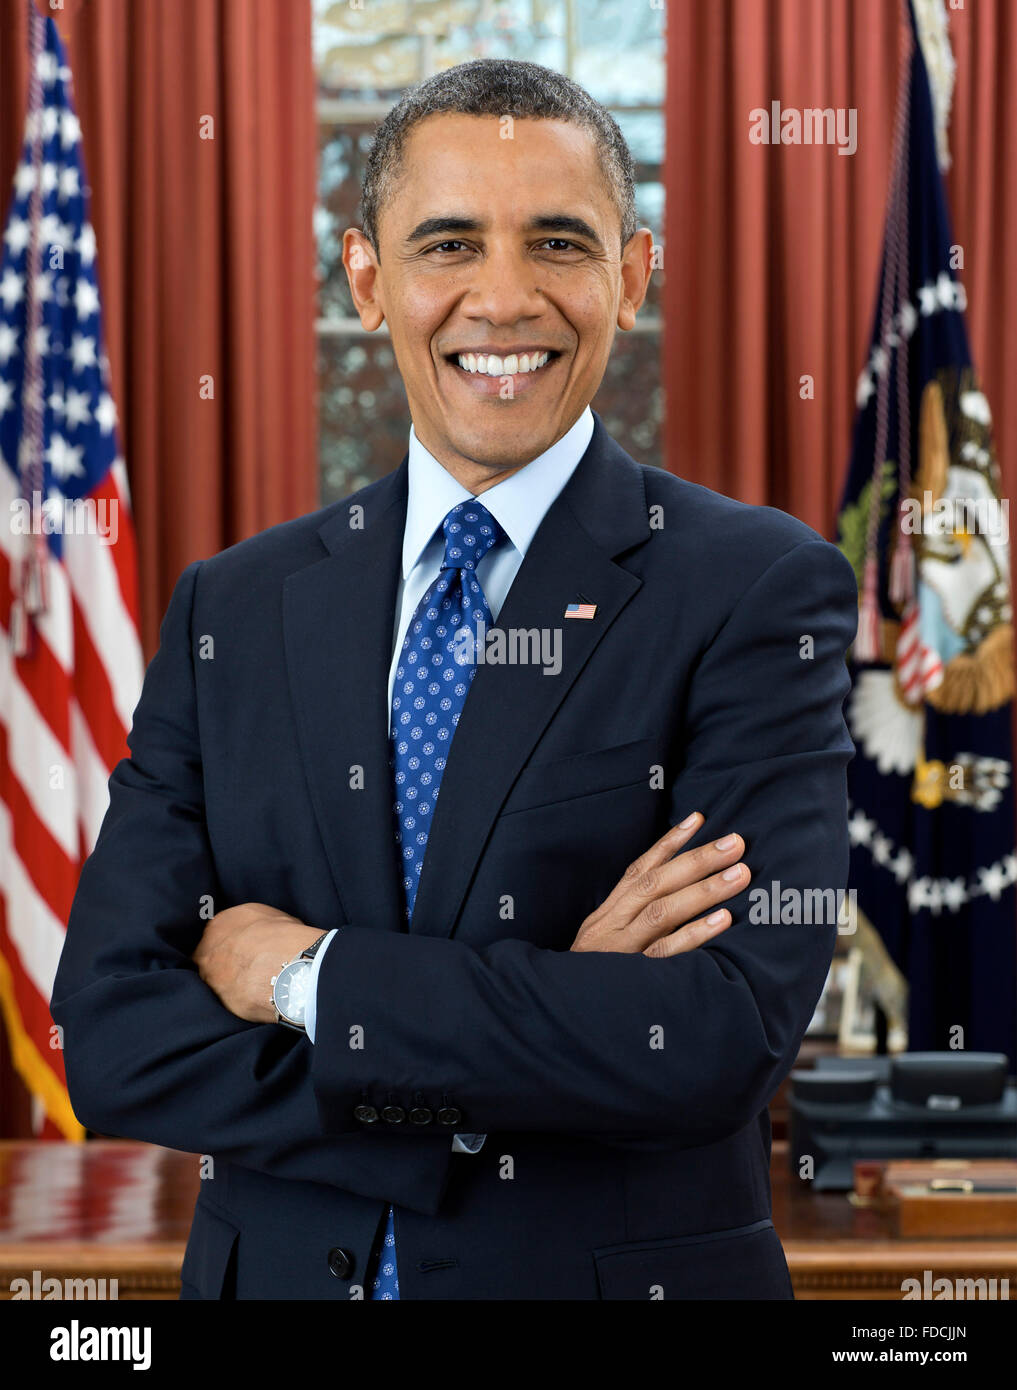 Barack Odam, Portrait. Portrait officiel de la Maison Blanche de Barack Obama, le 44e président des États-Unis, décembre 2012 Banque D'Images